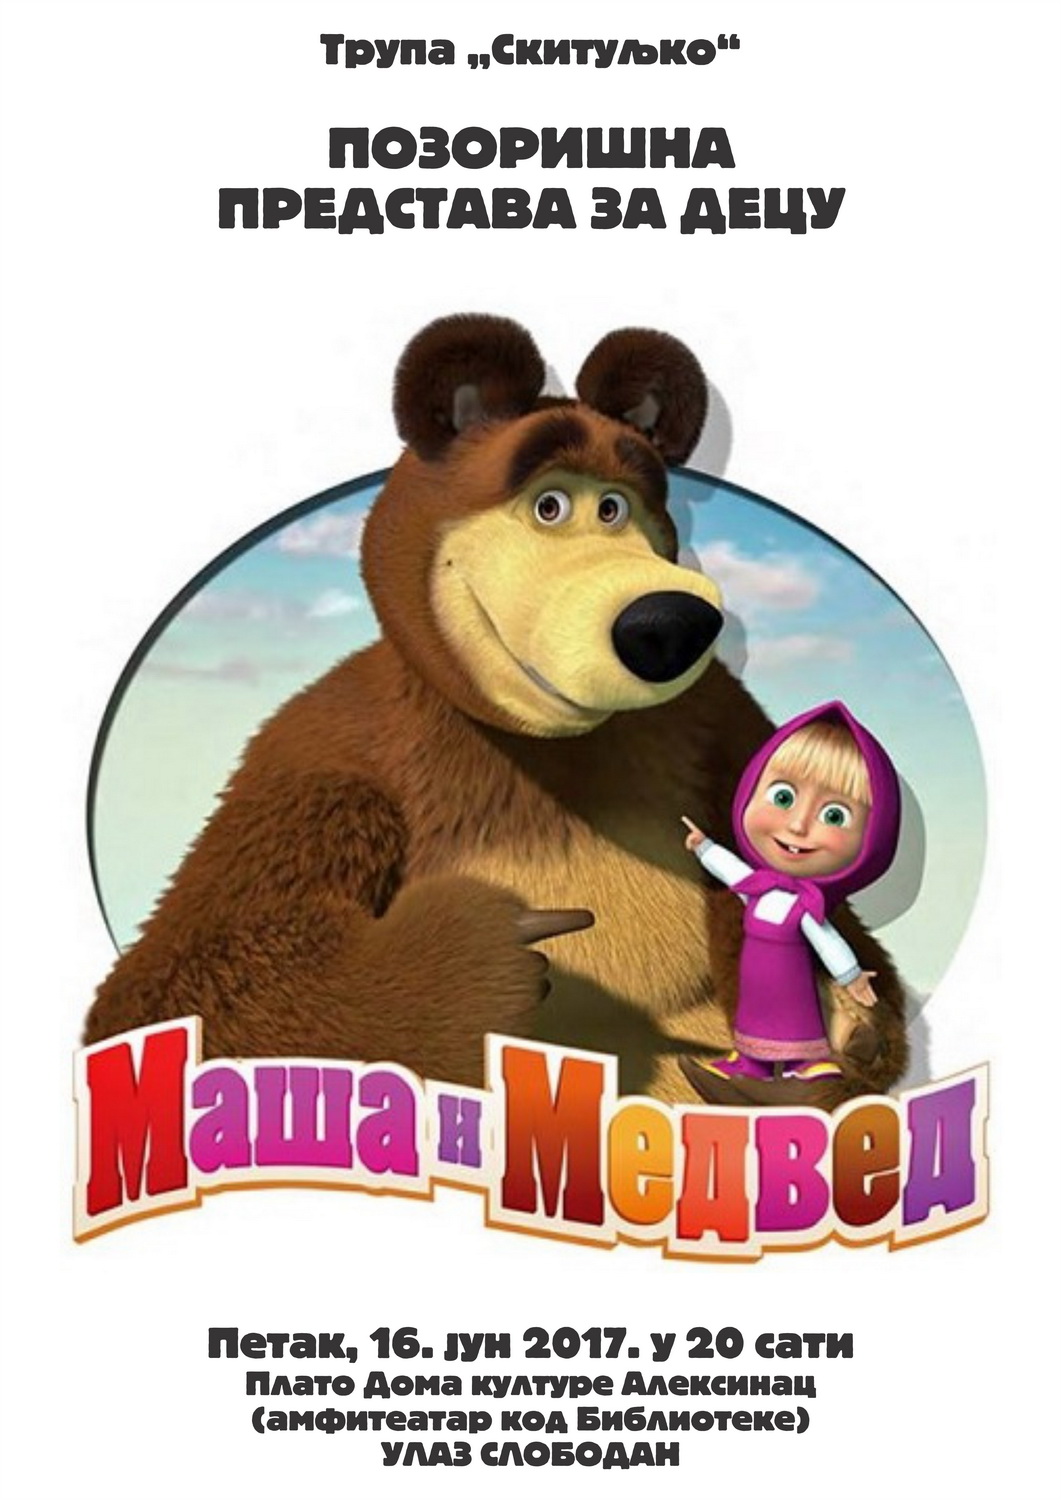 Представа за децу „Маша и Медвед“ <br>Трупа „Скитуљко“<br>16.6.2017.